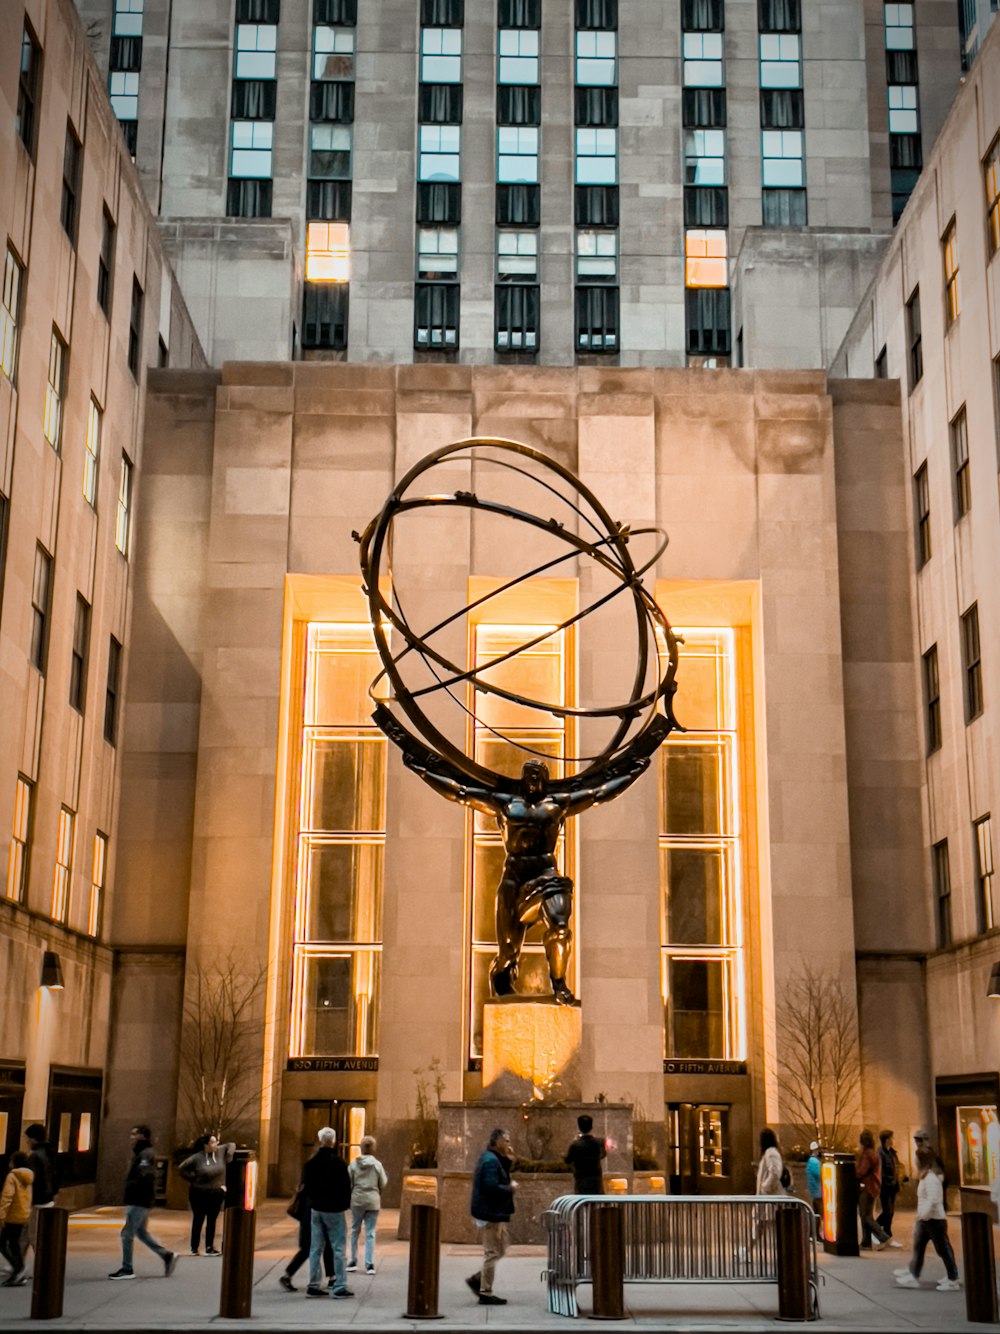 建物の前で地球儀を掲げた人の像